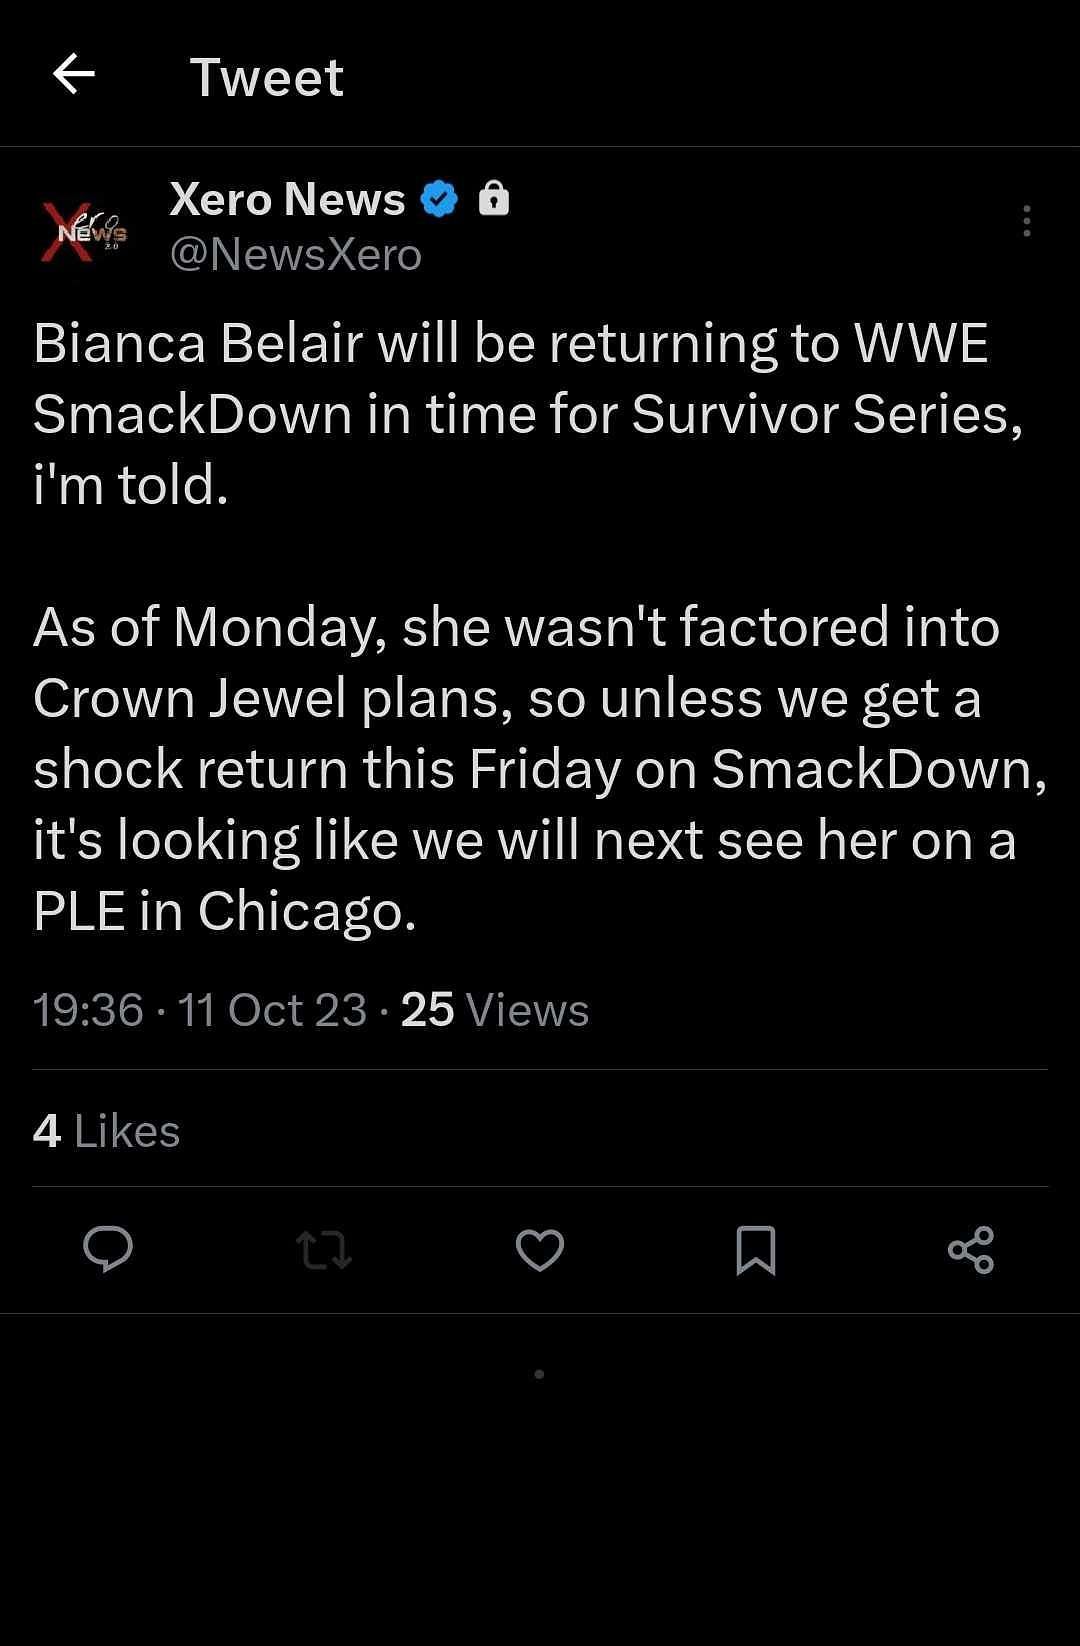 A screenshot of Xero News&#039; report about Bianca Belair